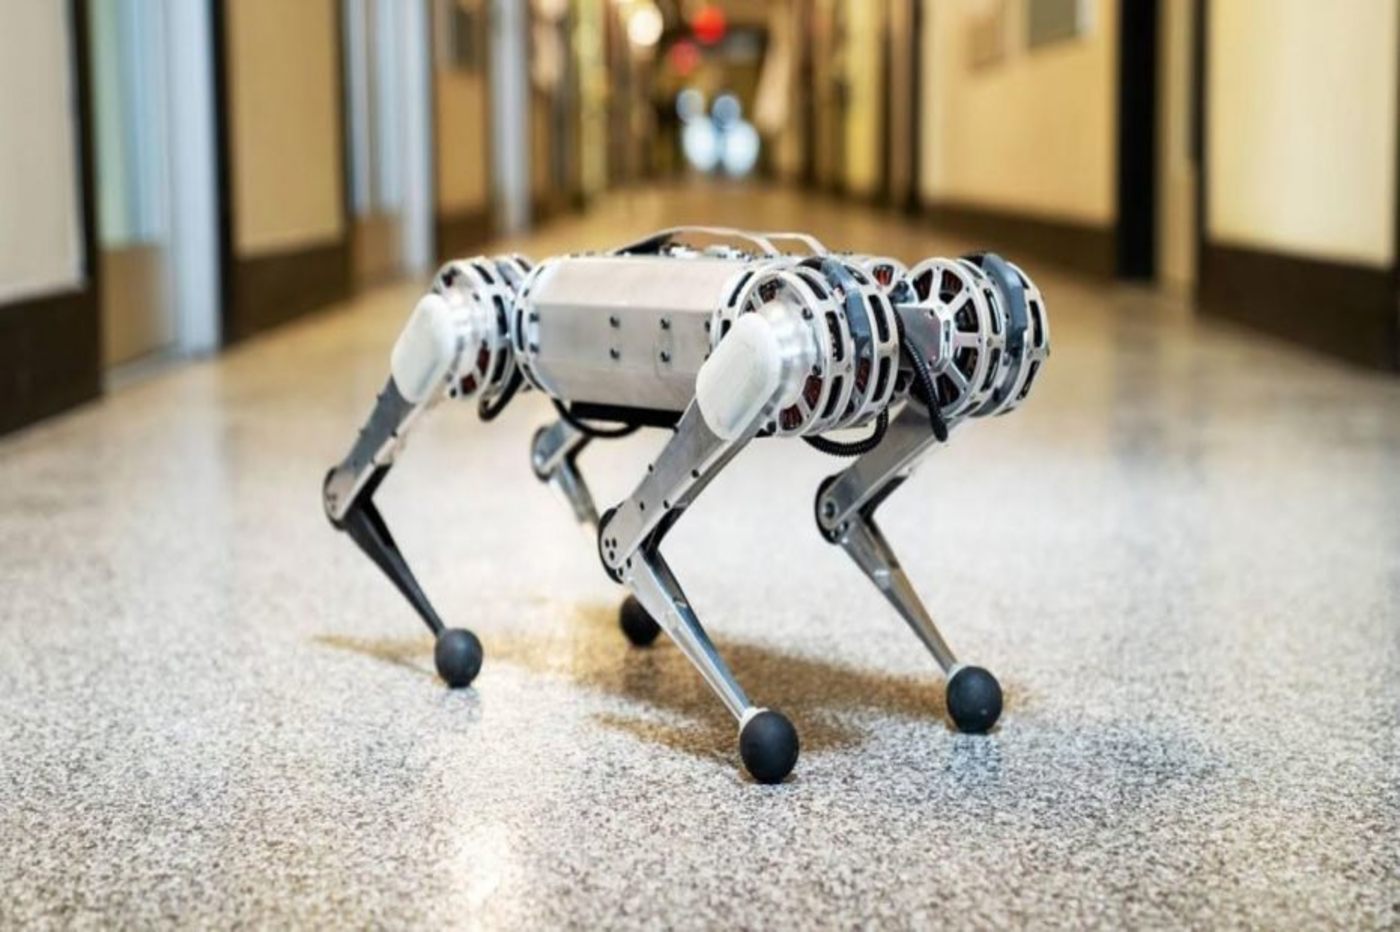 Cheetah, le robot du MIT, sait faire des sauts périlleux arrière